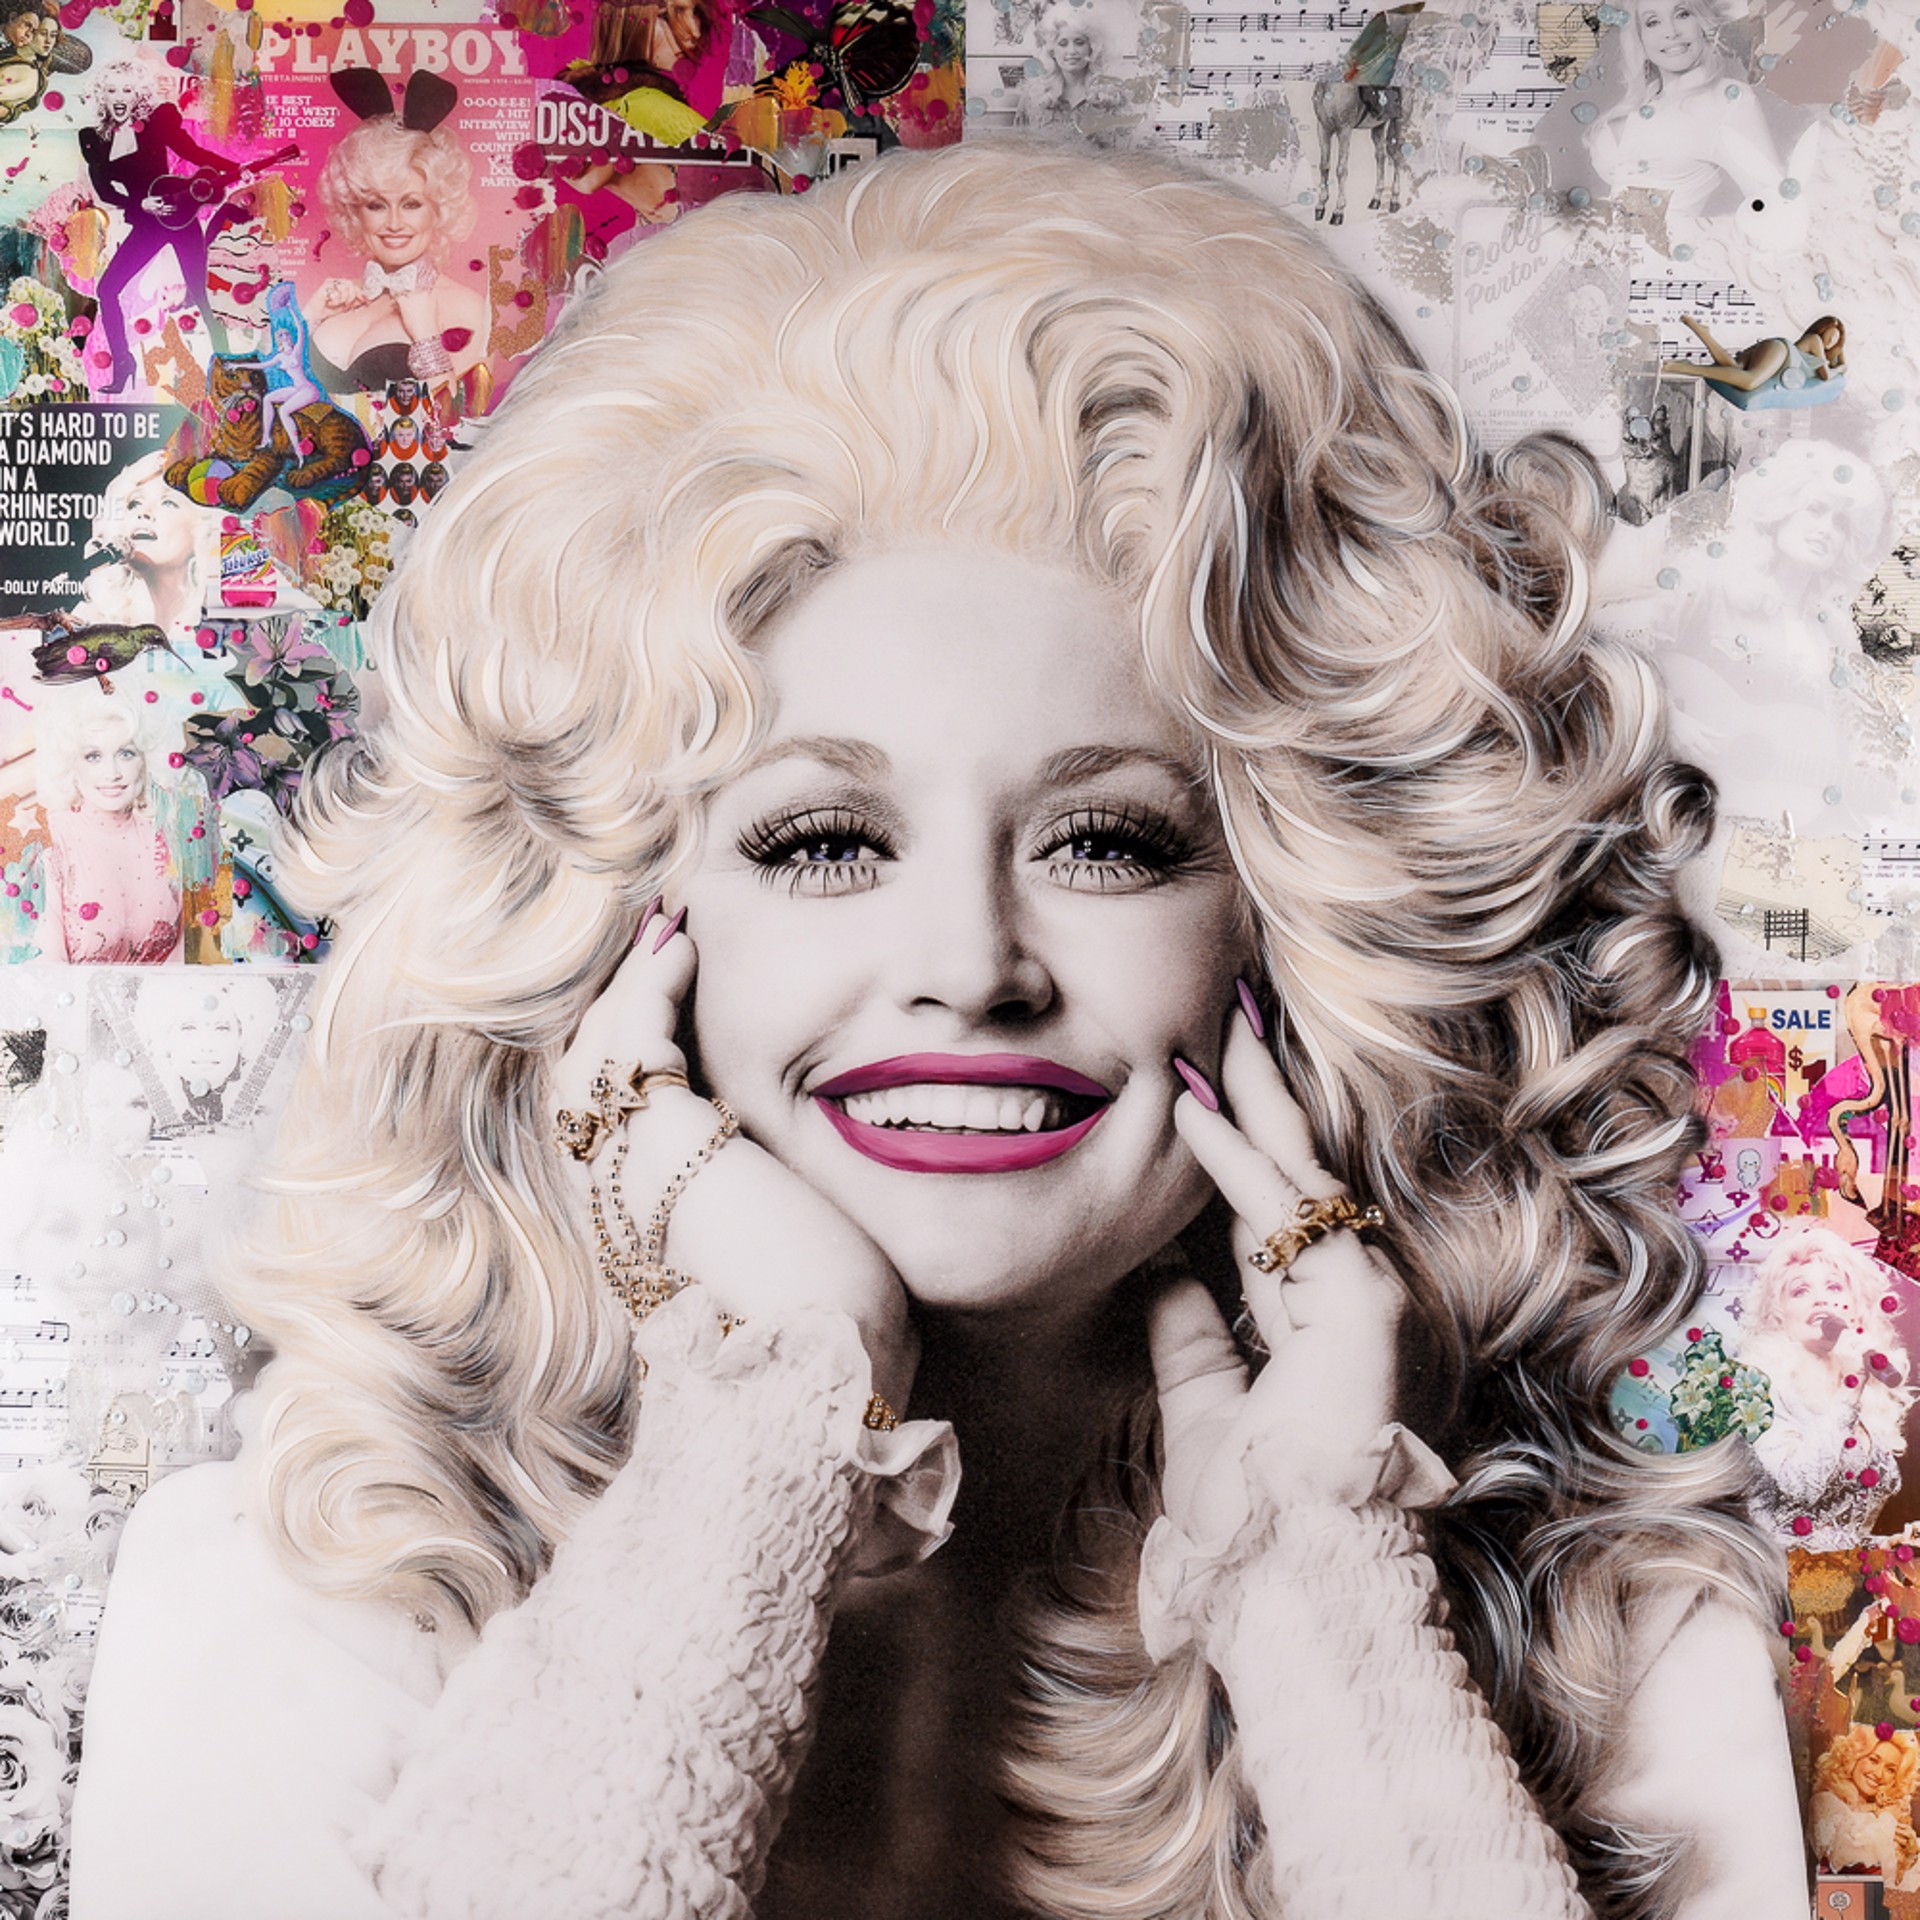 Dolly Parton by De Von